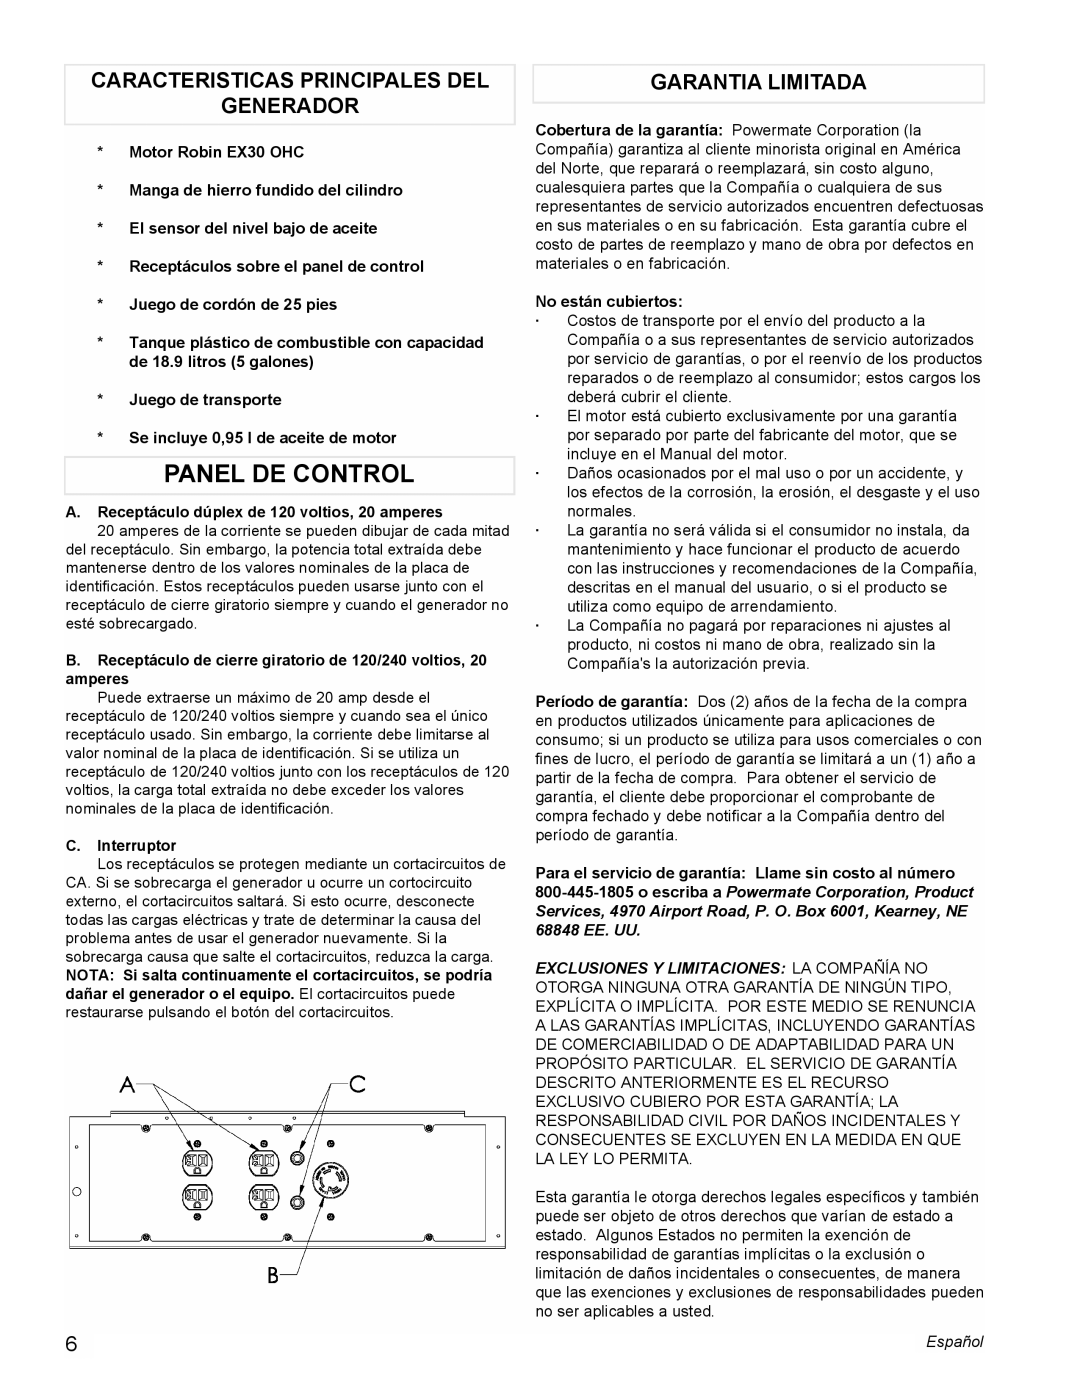 Powermate PM0435000 manual Panel De Control, Caracteristicas Principales Del Generador, Garantia Limitada 